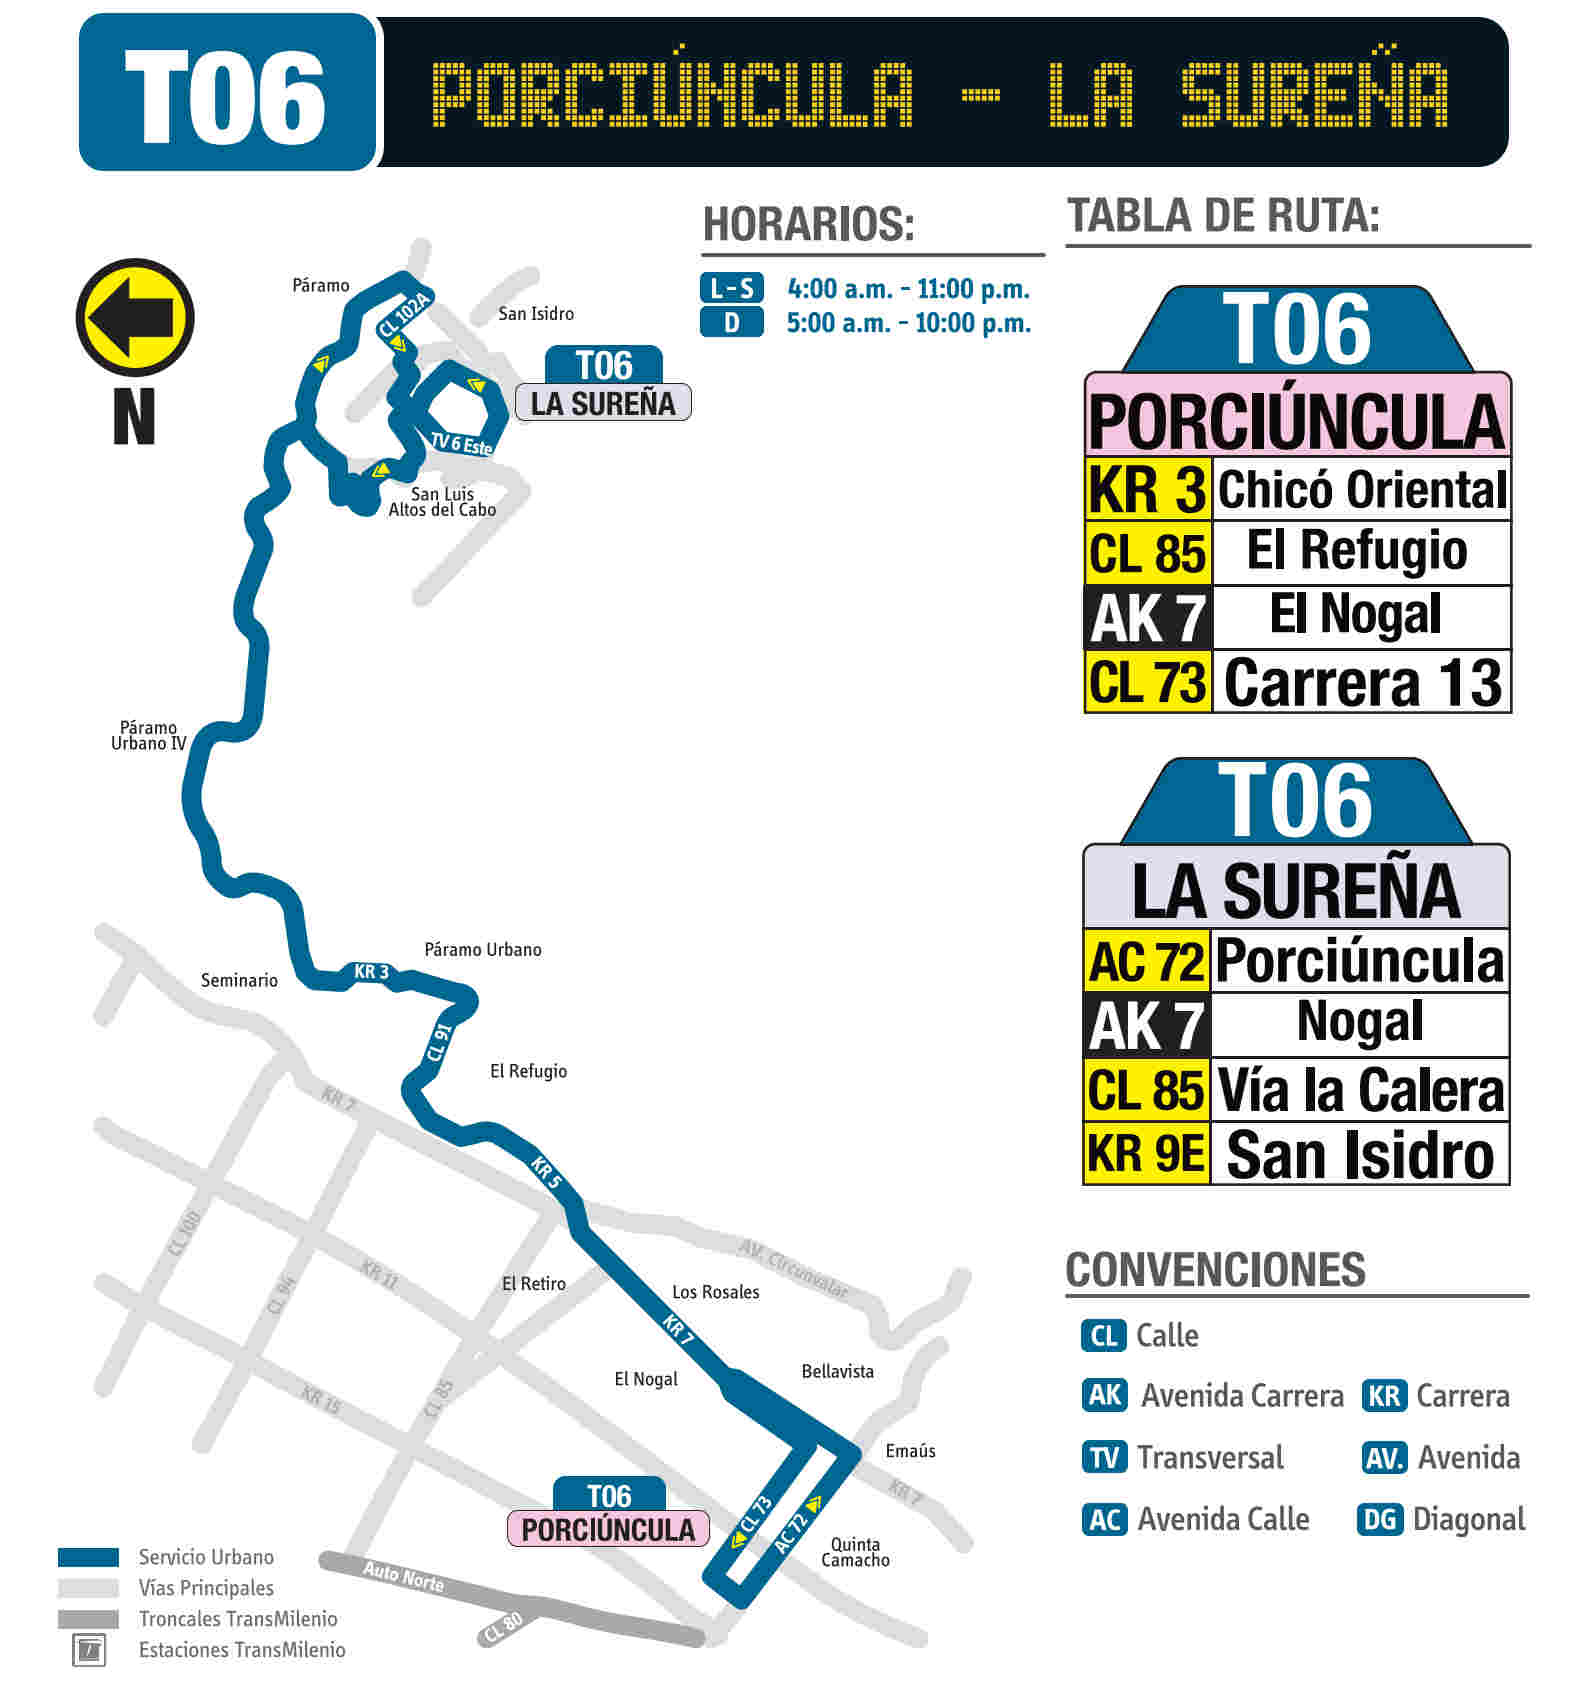 T06 La Sureña - Porciúncula, mapa bus urbano Bogotá